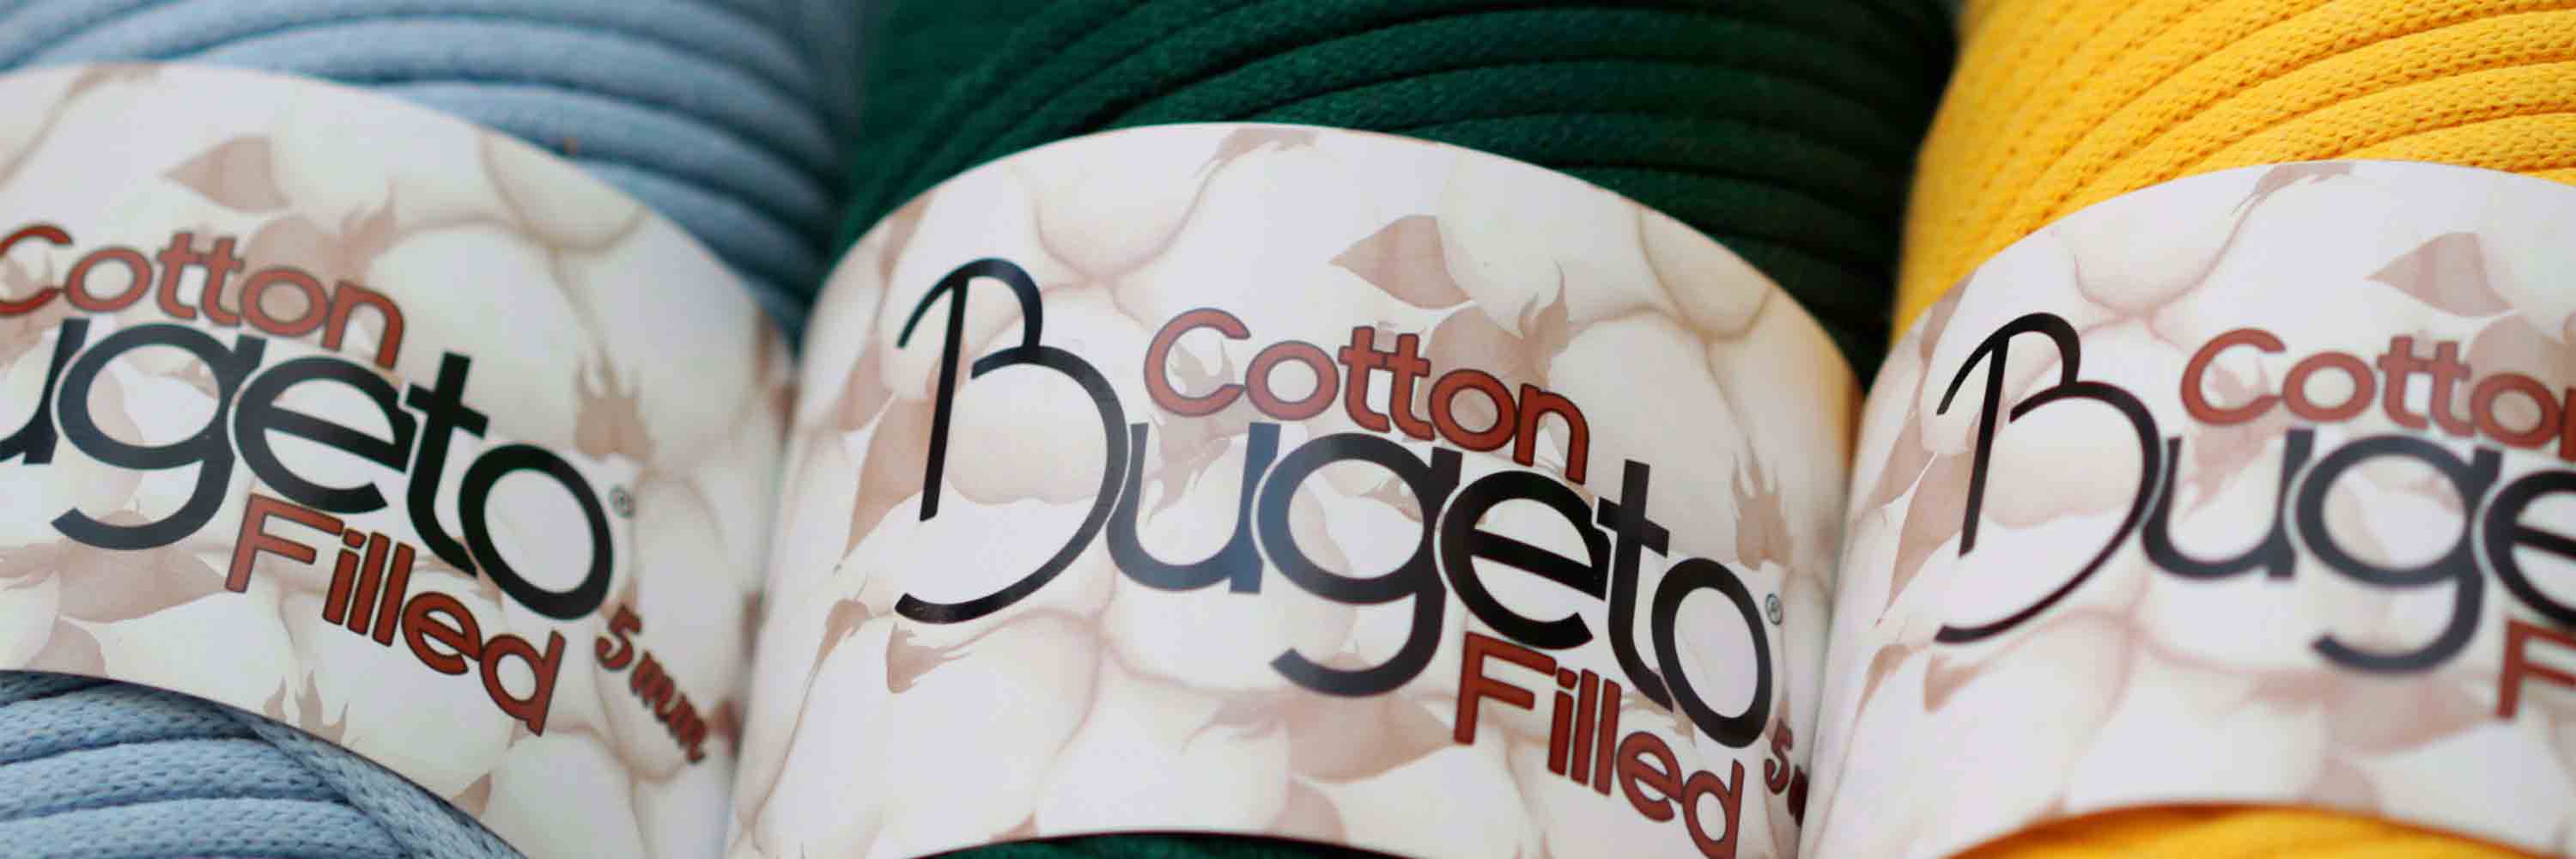 cotton filled yarns 5mm yarns bugeto yarn